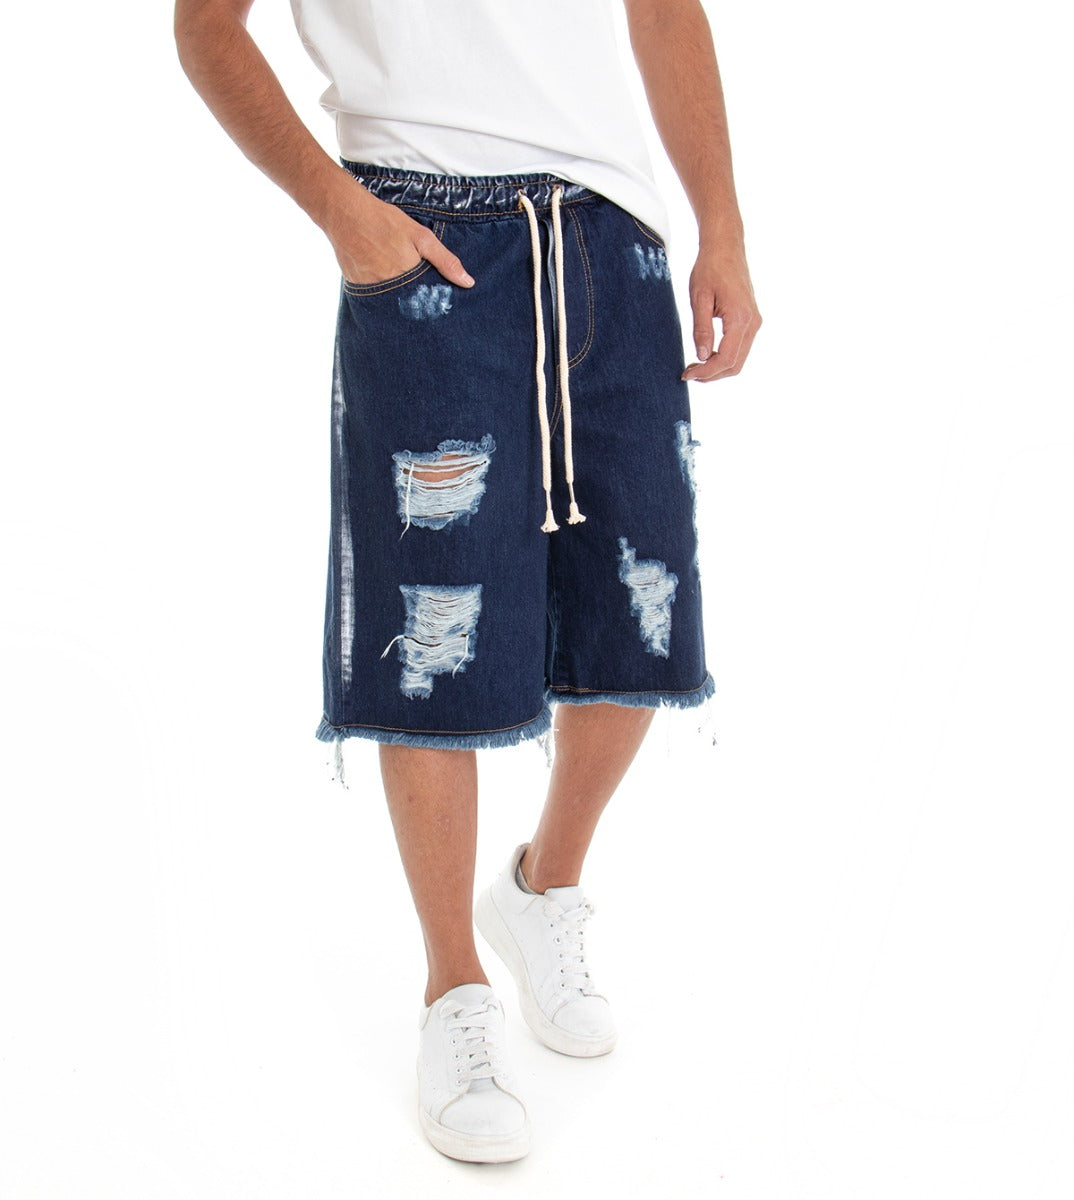 Bermuda Pantaloncino Uomo Jeans Corto Shorts Denim Blu Scuro Over Rotture Elastico GIOSAL-PC1516A